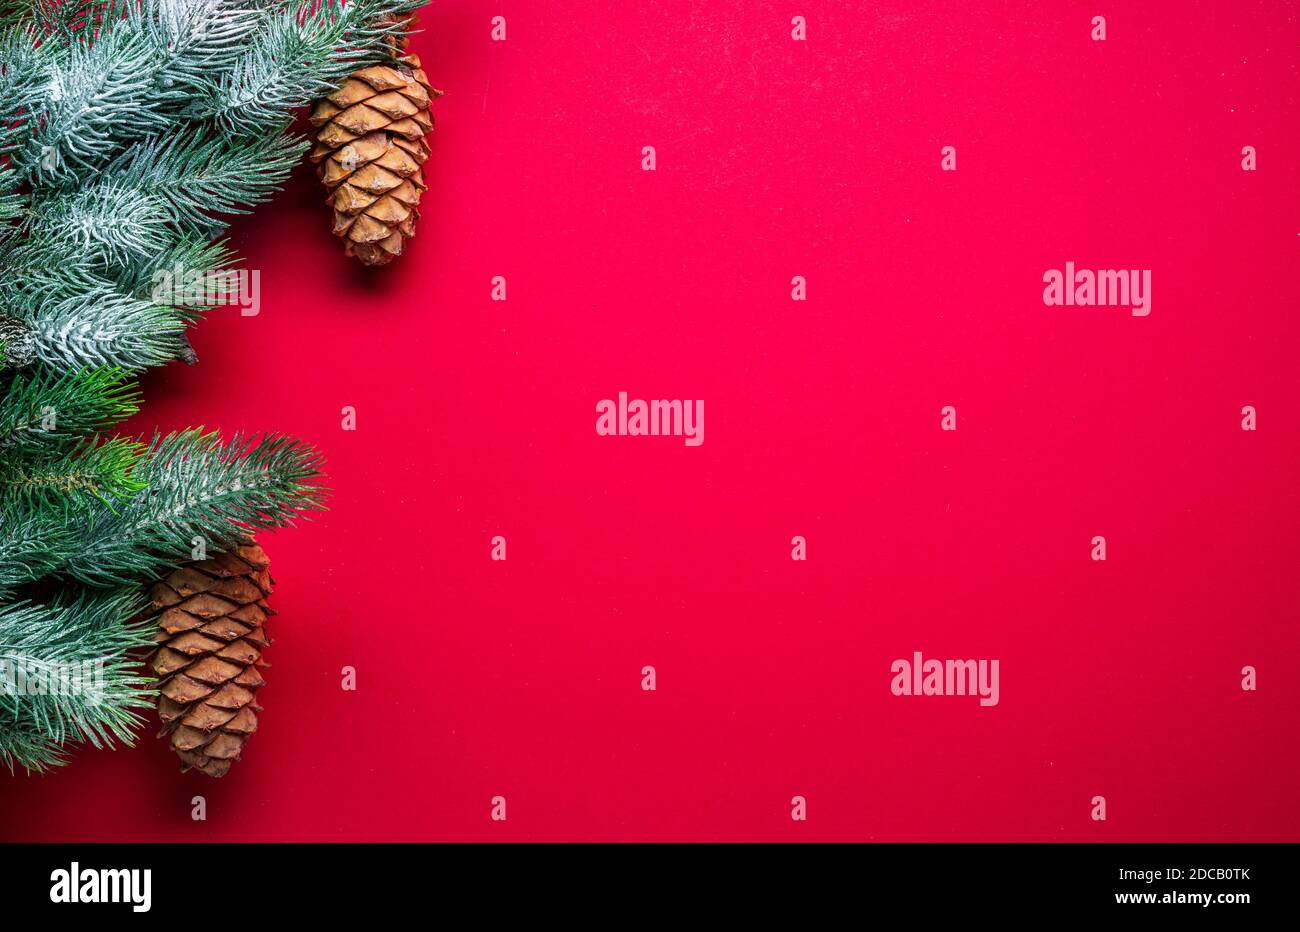 Fond rouge nouvel an ou Noël avec branche de sapin et cônes de sapin. Vue de dessus. Banque D'Images